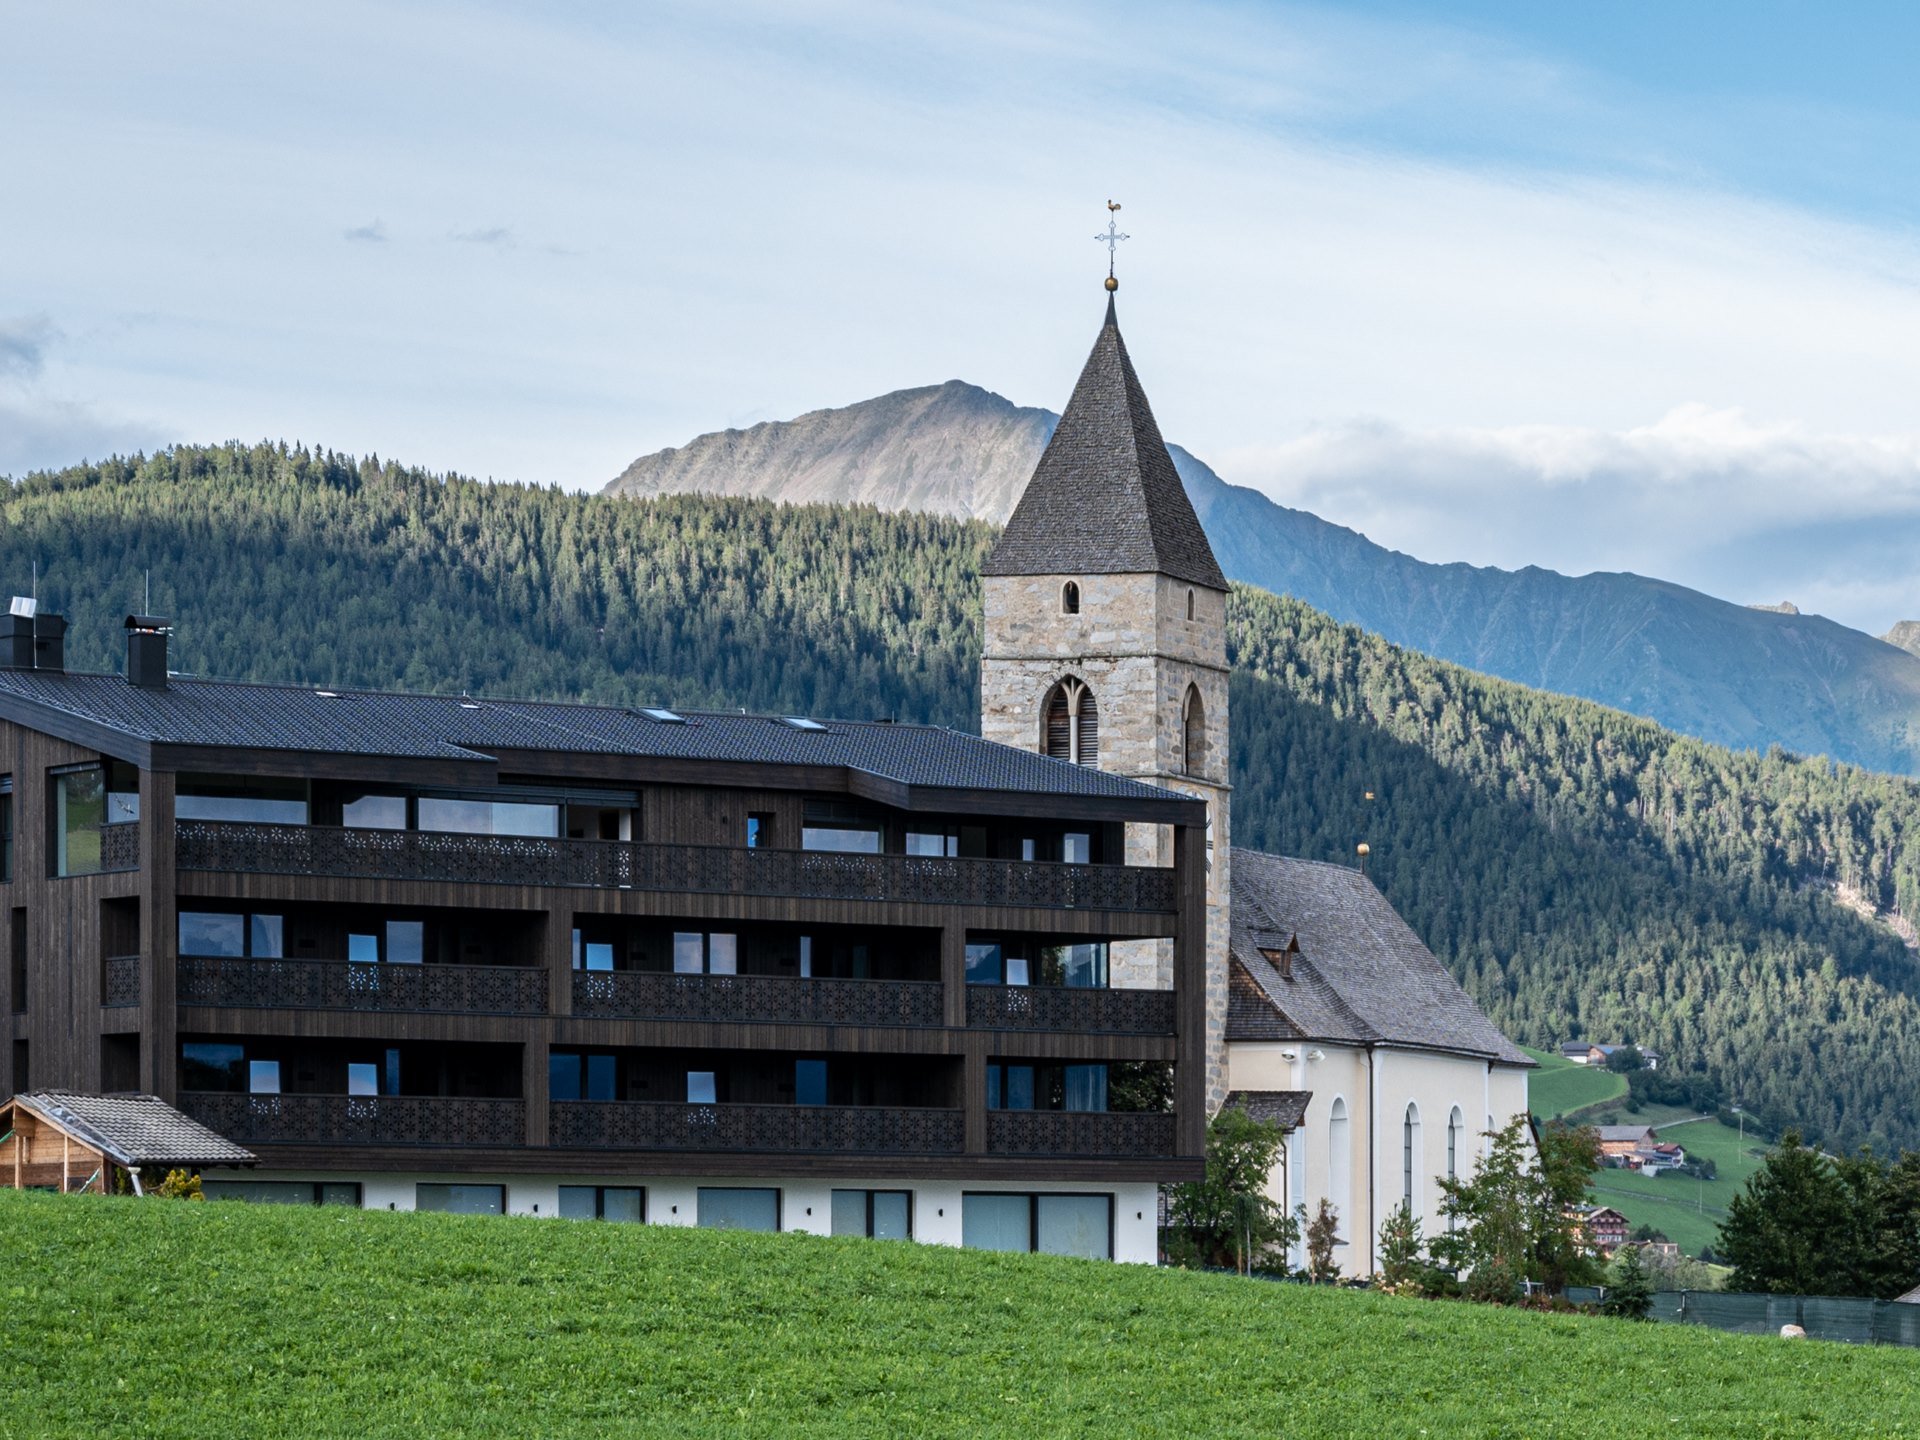 Urlaub in Südtirol: Auf in die Mountain Lodge Margit! ❋